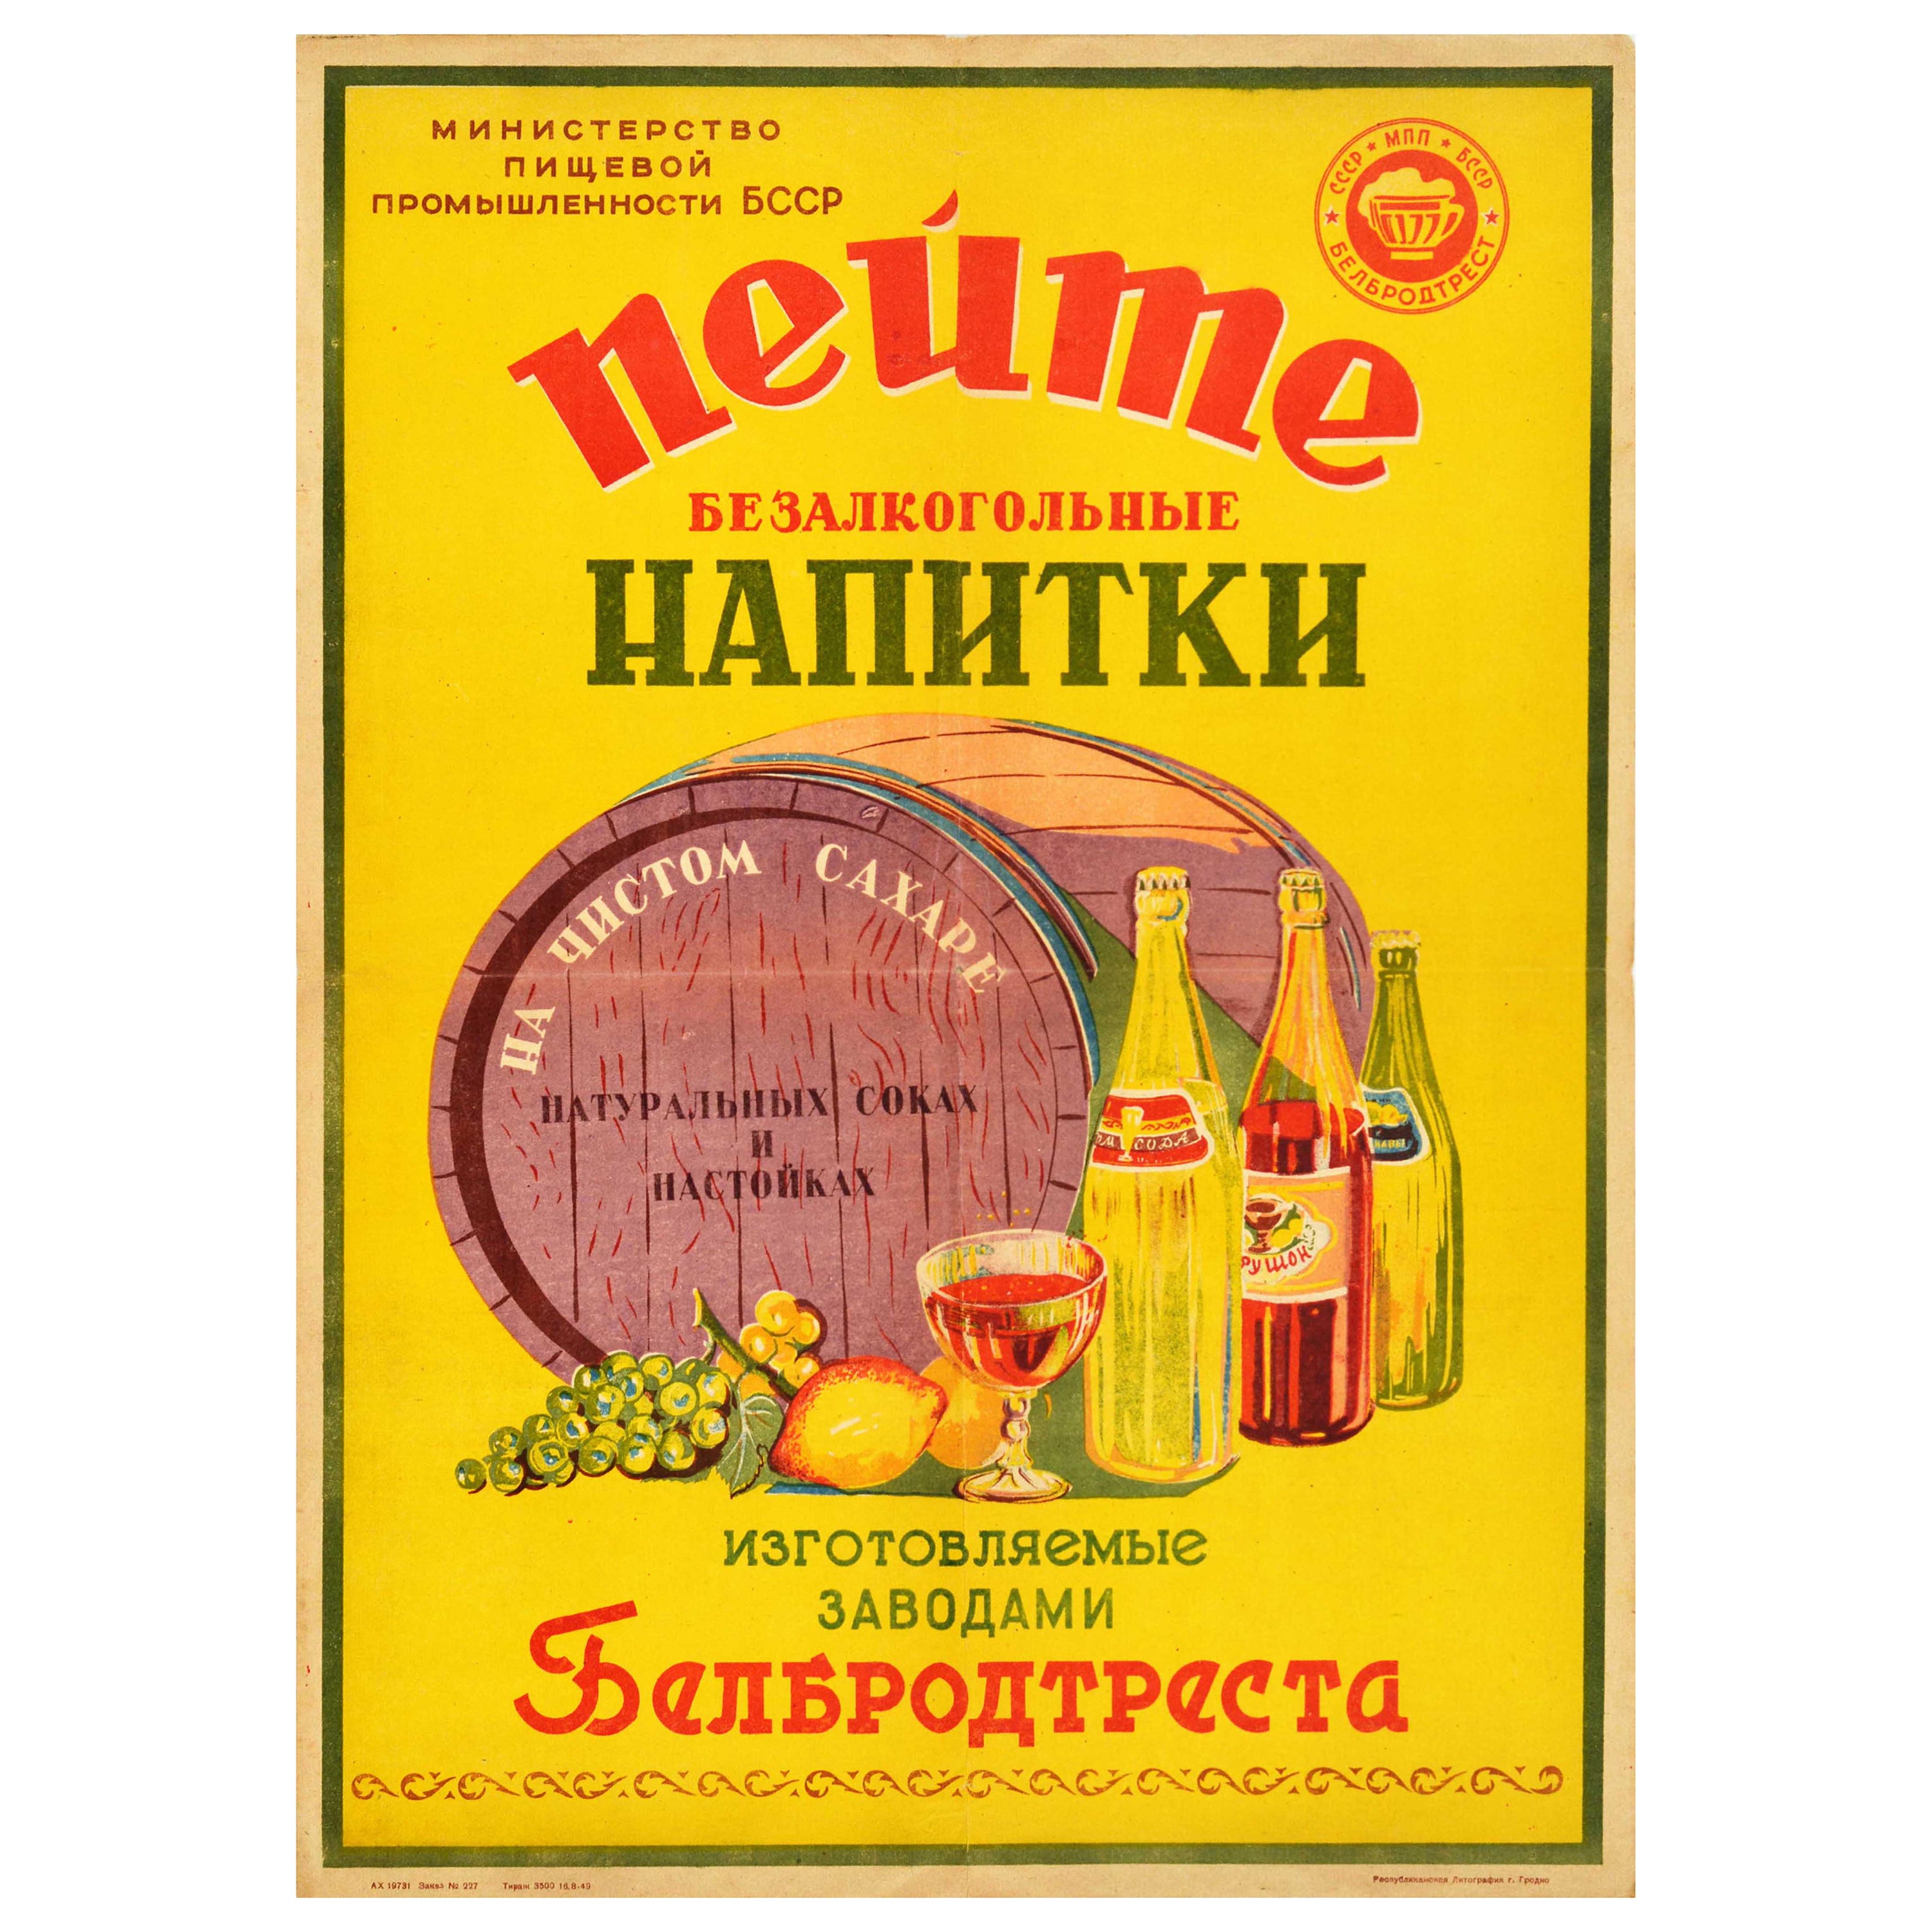 Original-Vintage-Getränke-Poster, nicht alkoholic, weiche Getränke, Juice, UdSSR, Lebensmittelindustrie